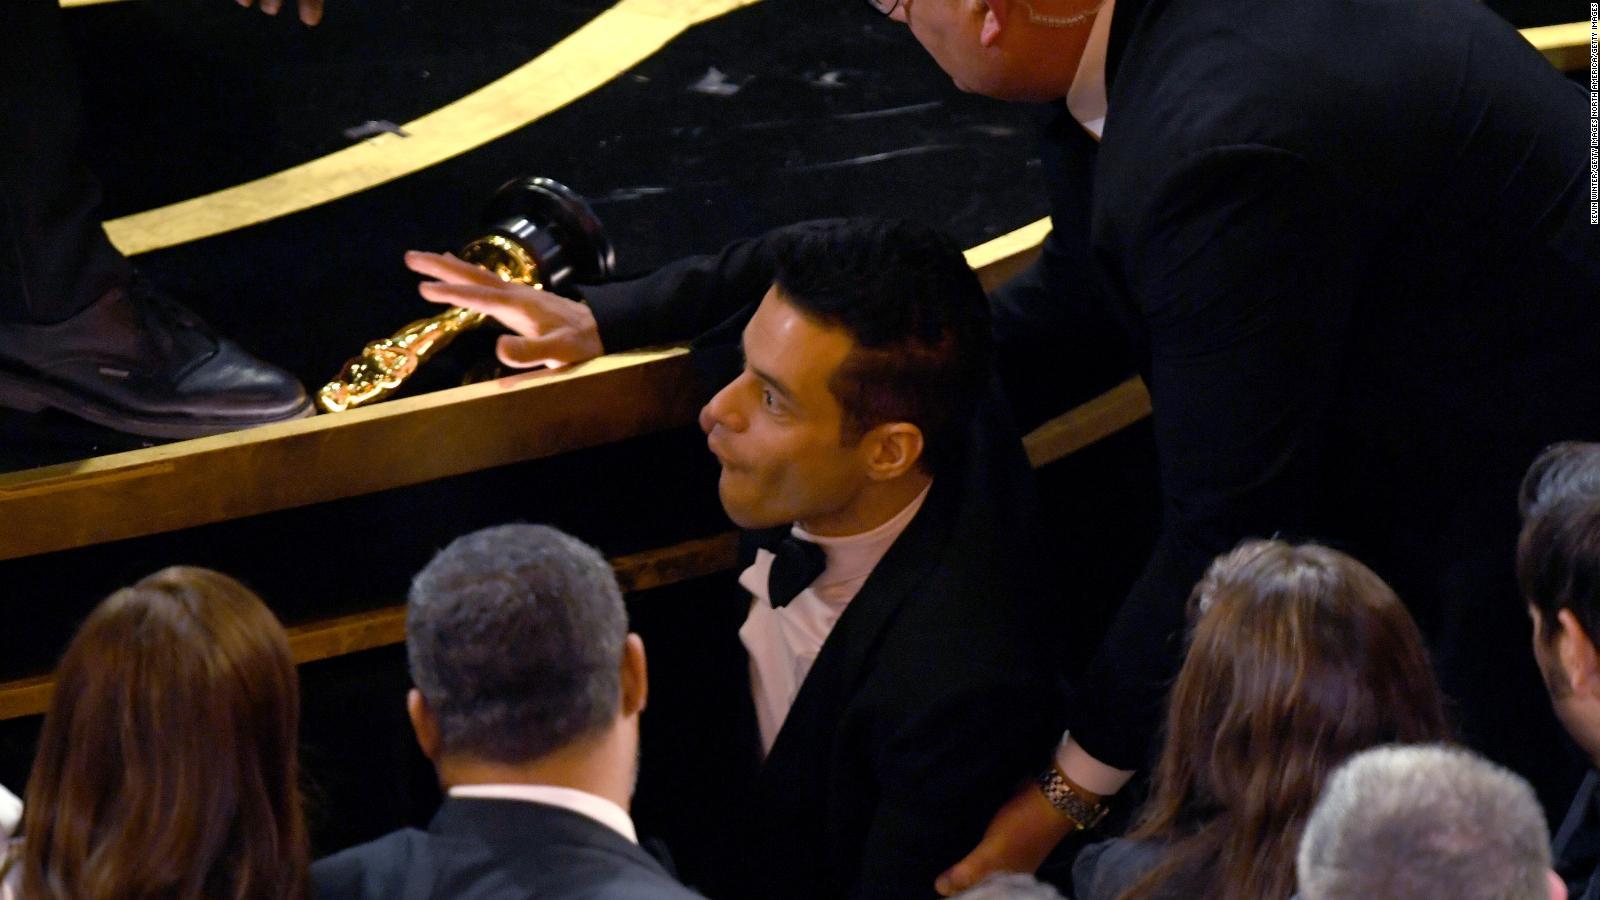 Rami Malek falls off stage at Oscars